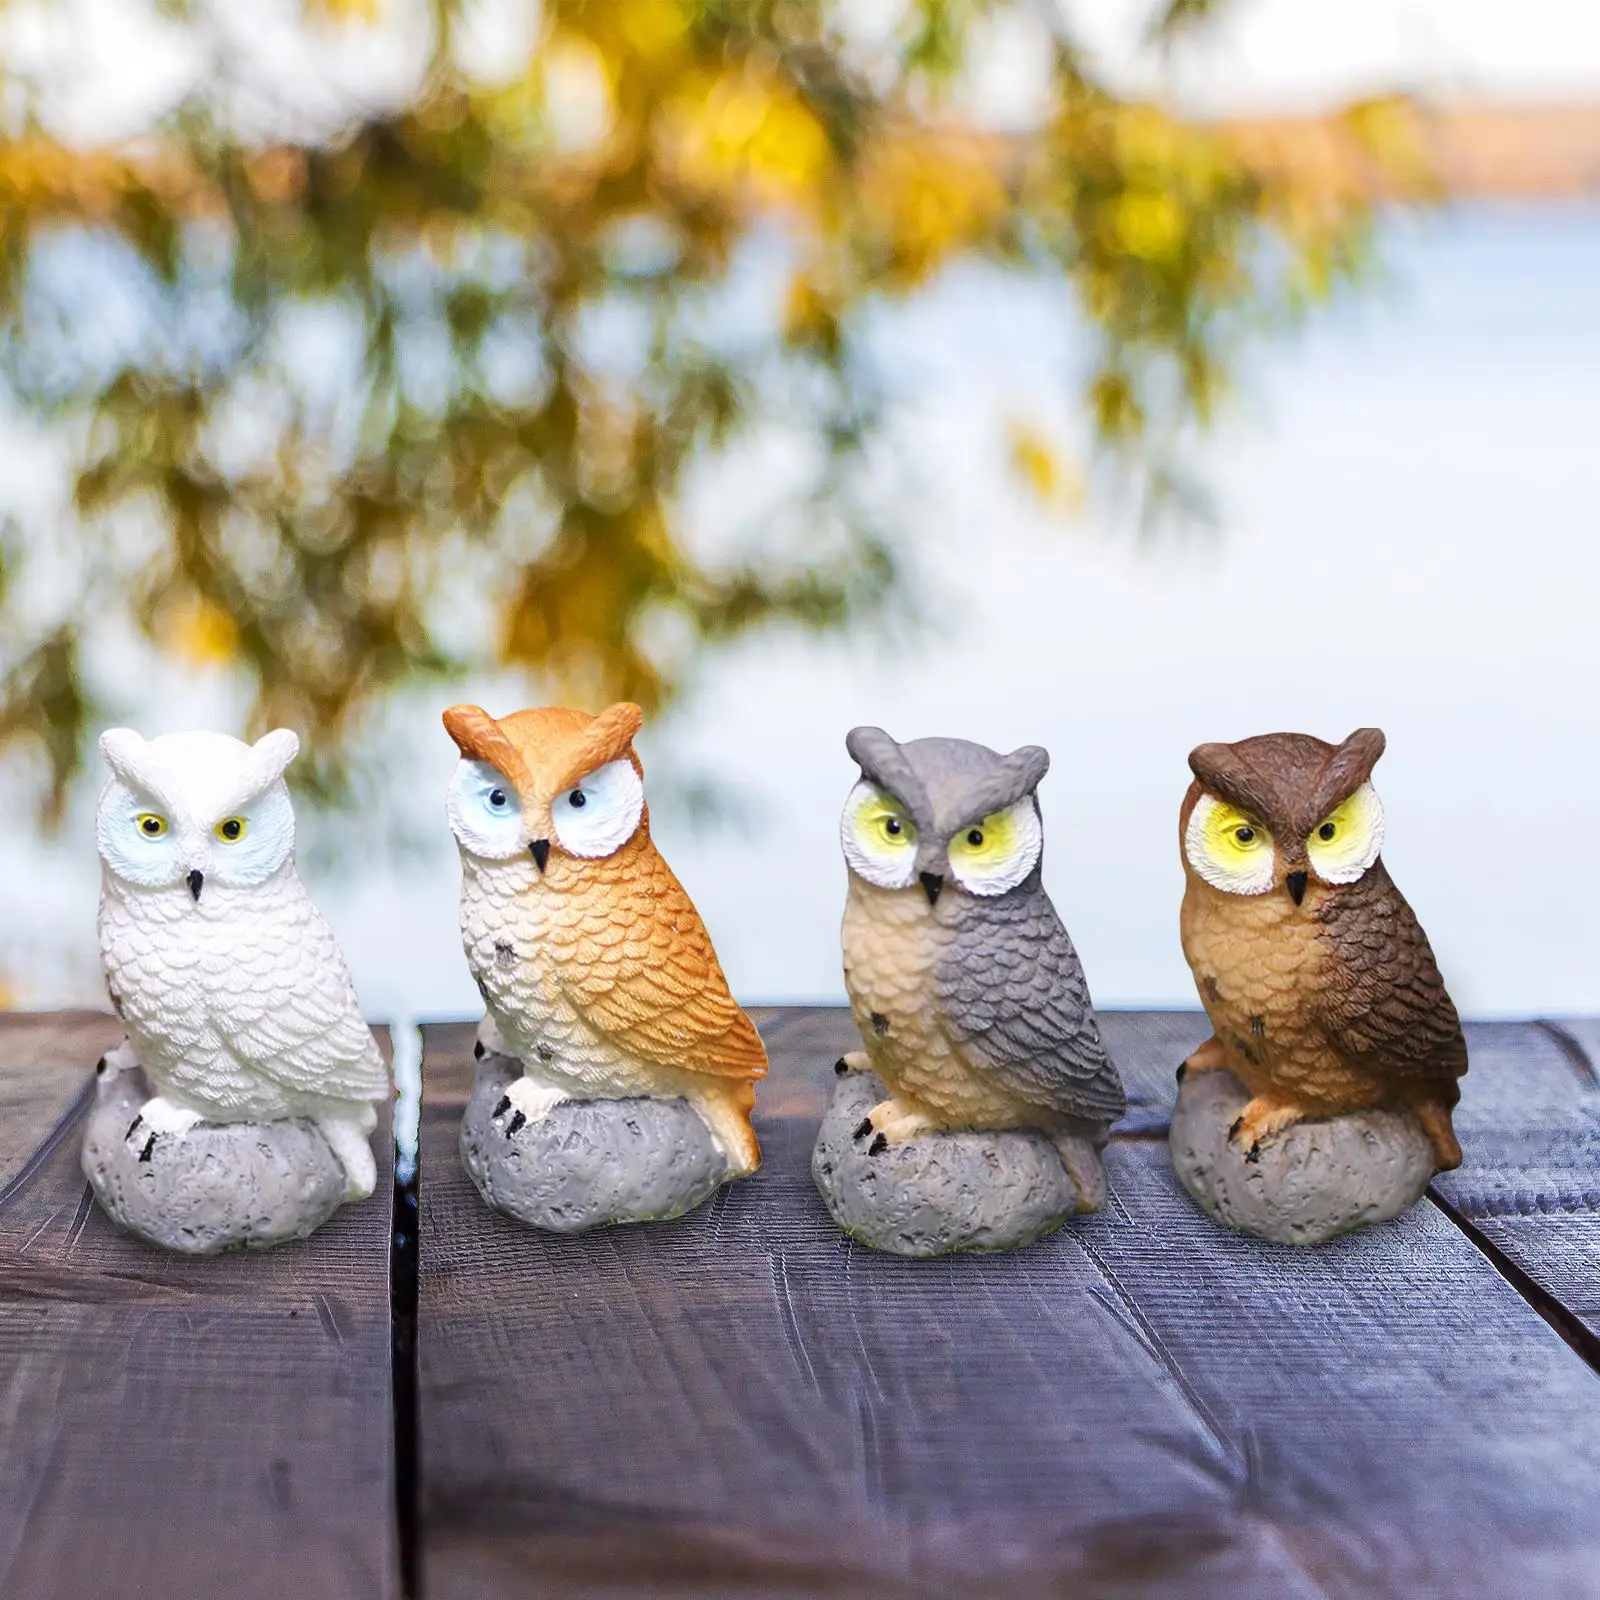 4x Смоляные миниатюрные фигурки птиц и миниатюрных сов для декора бонсай0